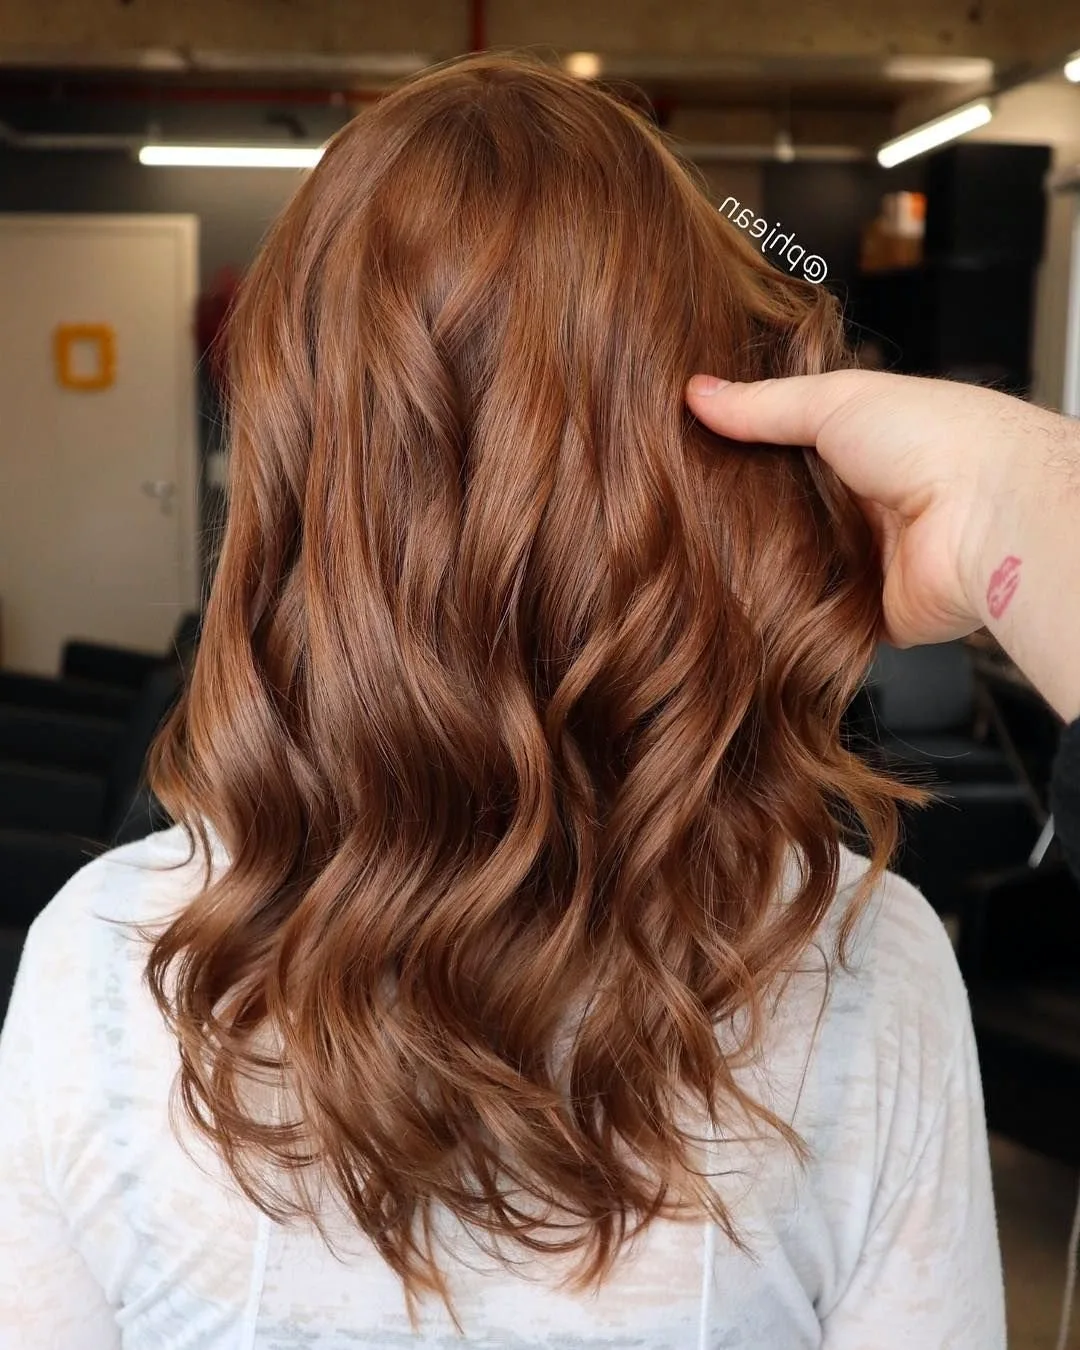 окрашивание волос в каштановый цвет фото